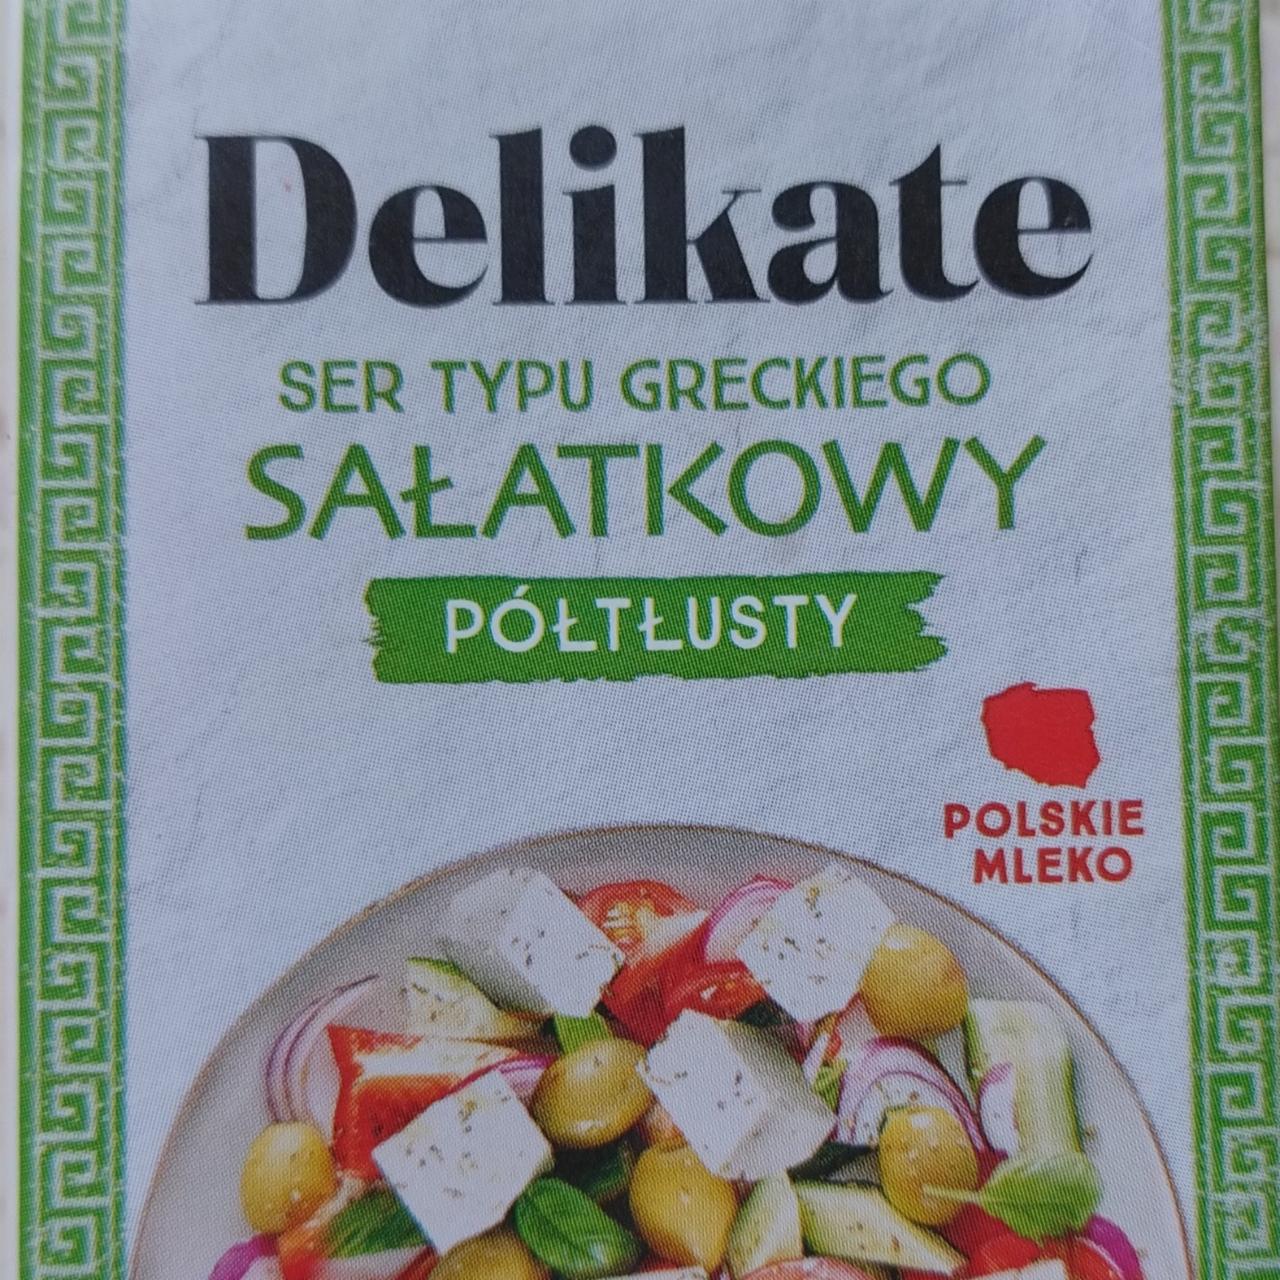 Fotografie - Ser typu greckiego salatkowy póltlusty Delikate